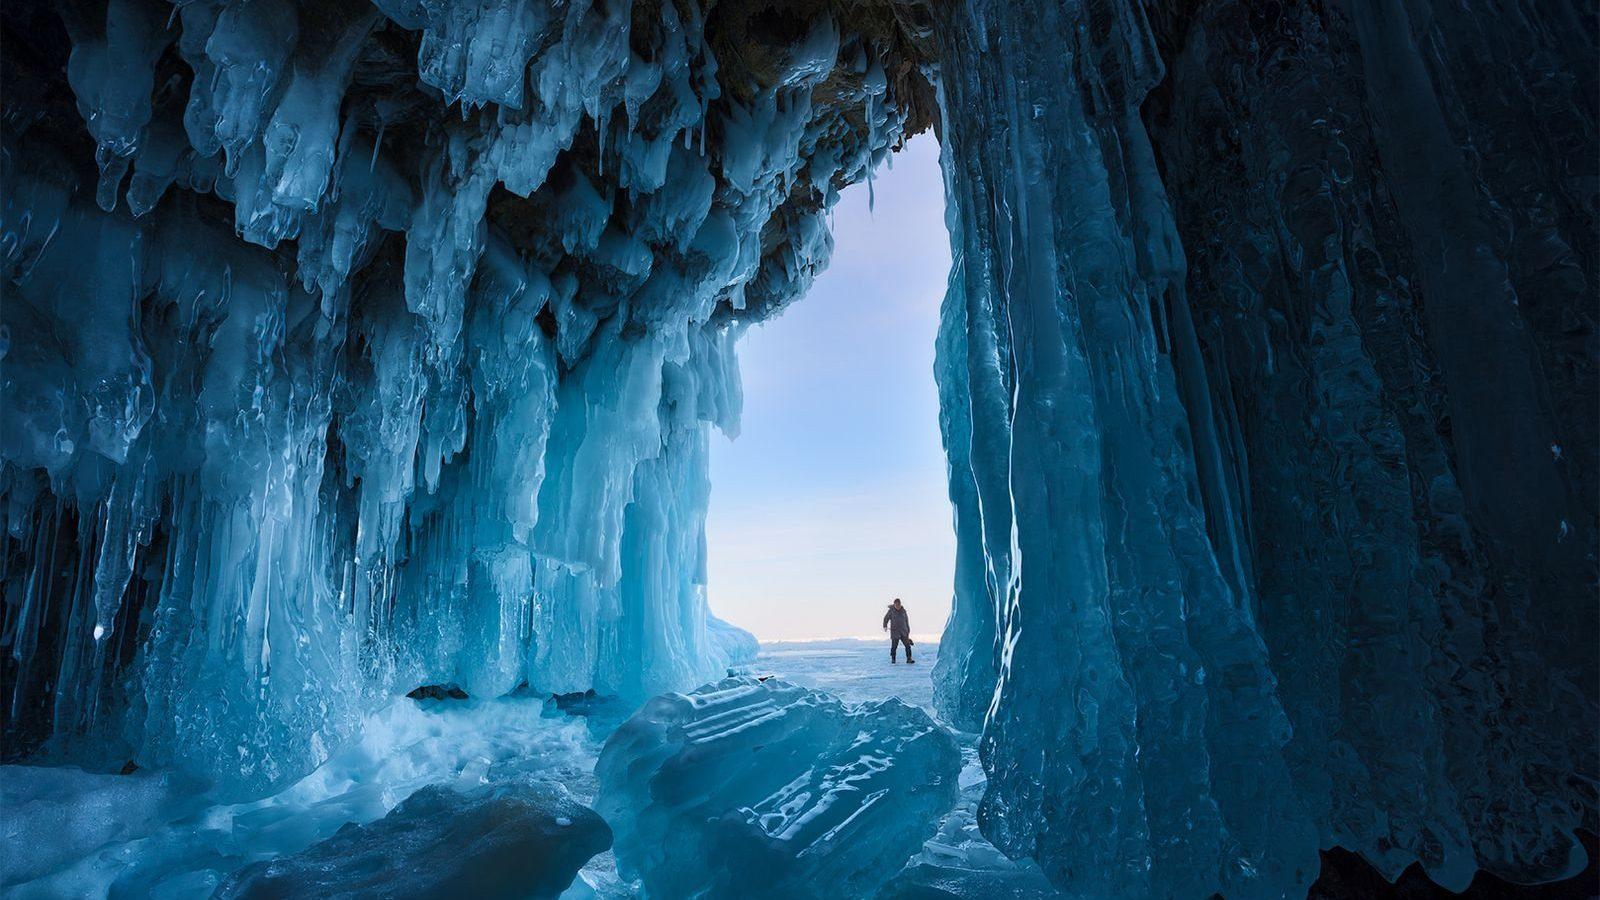 Ледяные гроты Аляски – это одно из самых впечатляющих природных явлений в мире. Эти гроты образуются из ледниковых пещер, которые наполняются водой, а затем замерзают, создавая удивительные ледяные структуры и игры света